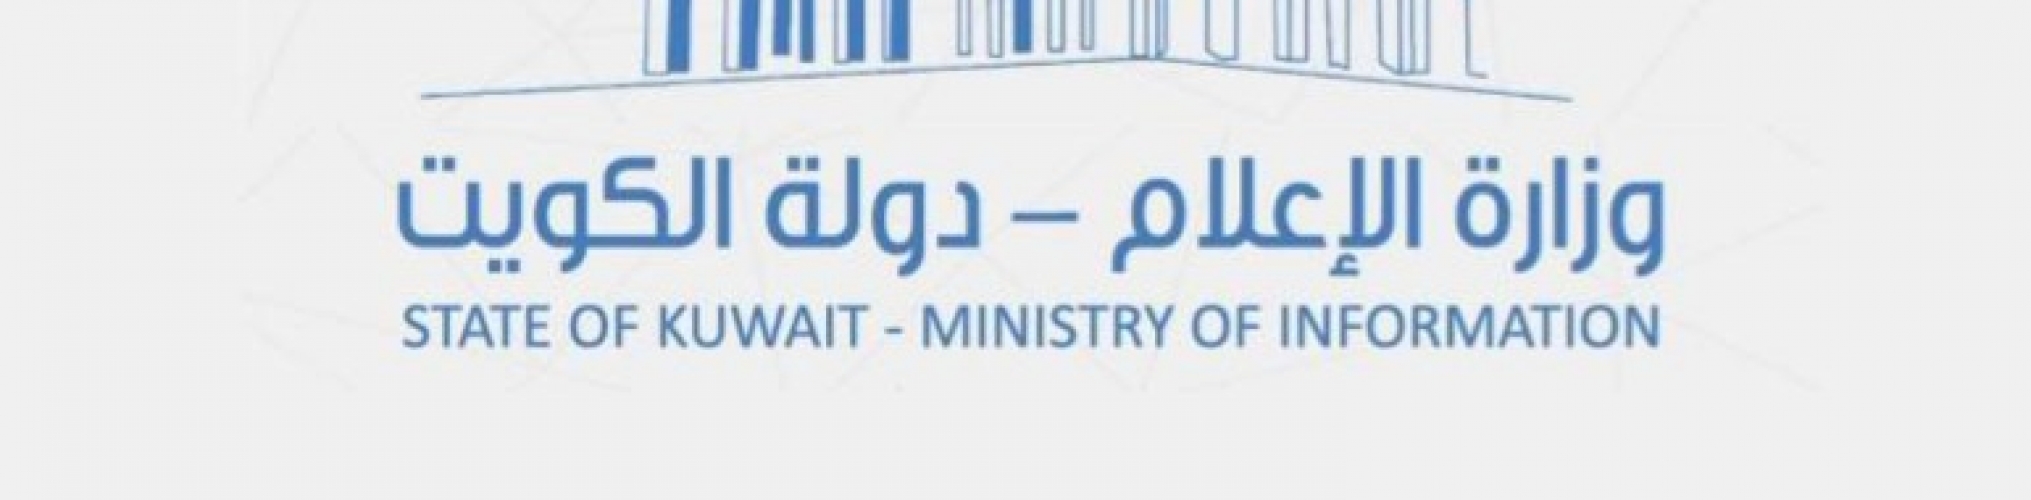 وزارة الإعلام الكويتية تصدر بيانا حول مسلسل